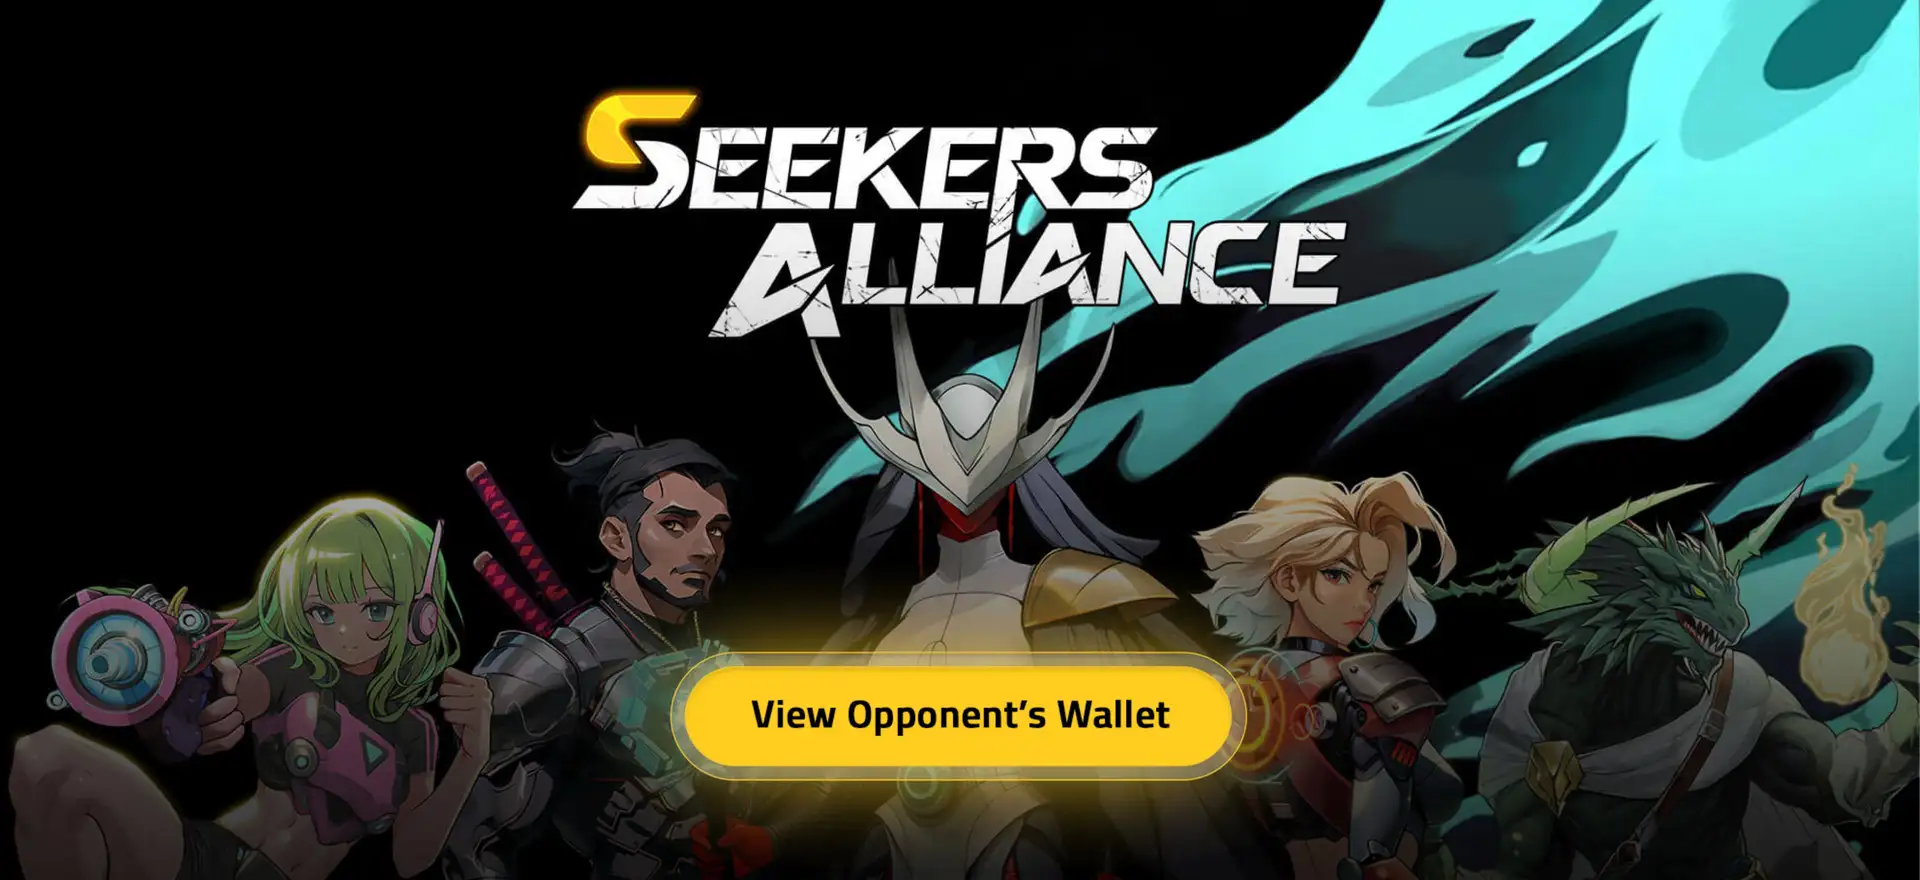 Seekers Alliance